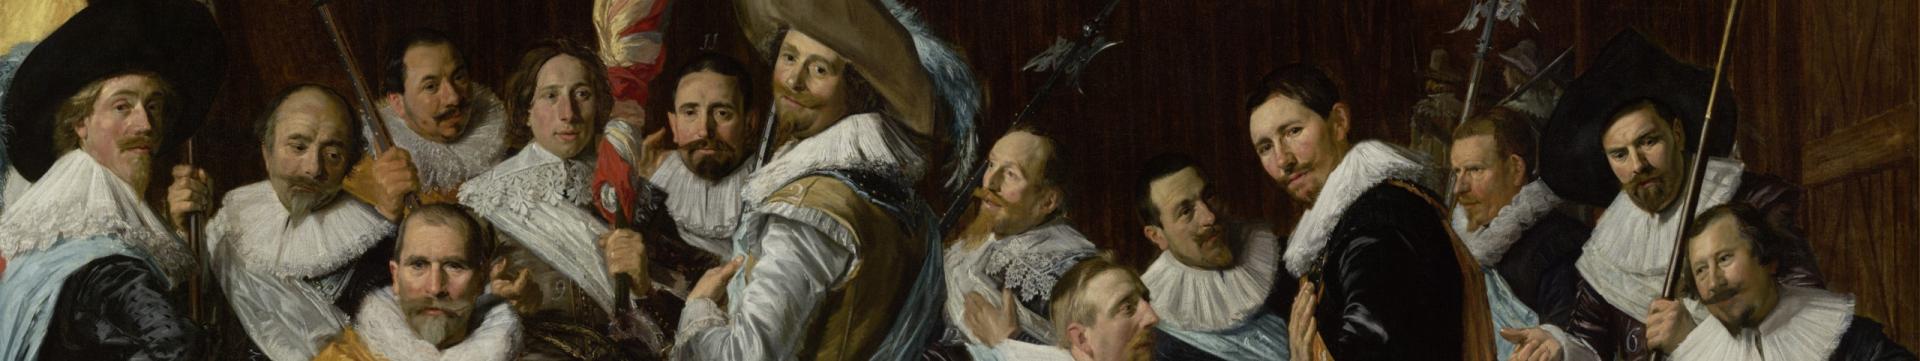 Uitsnede van een schilderij van Frans Hals